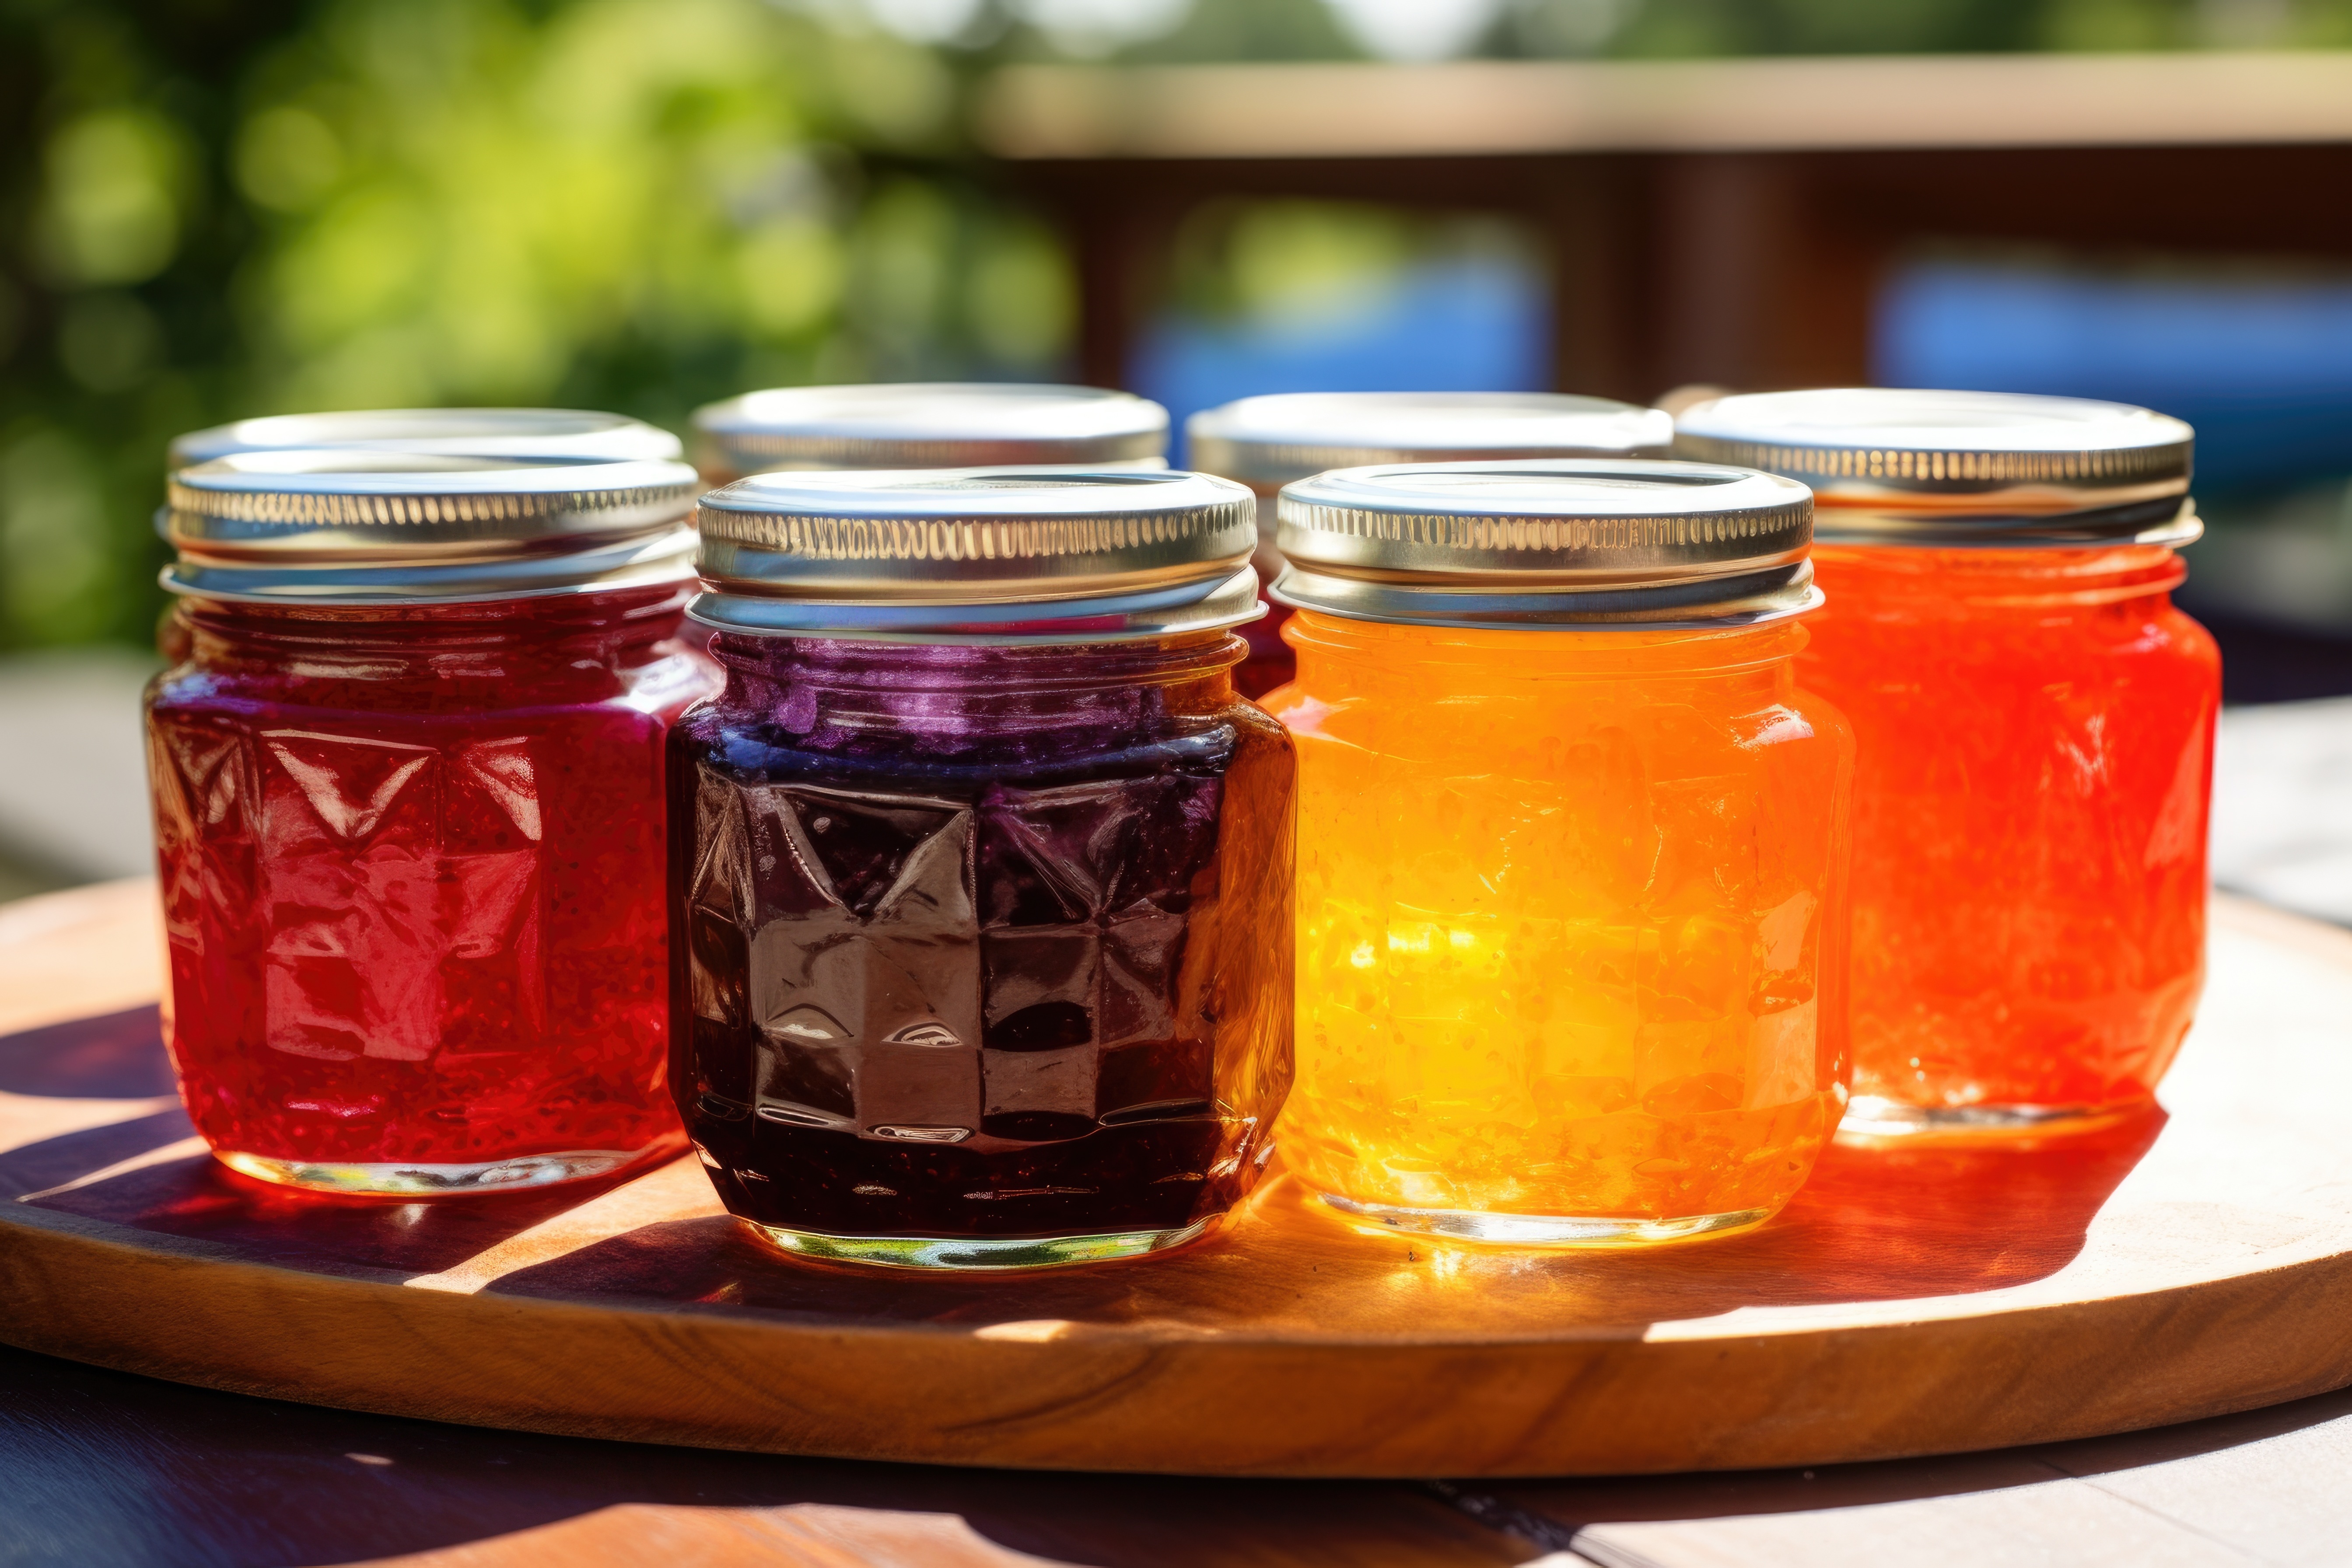 jam & jelly in jars